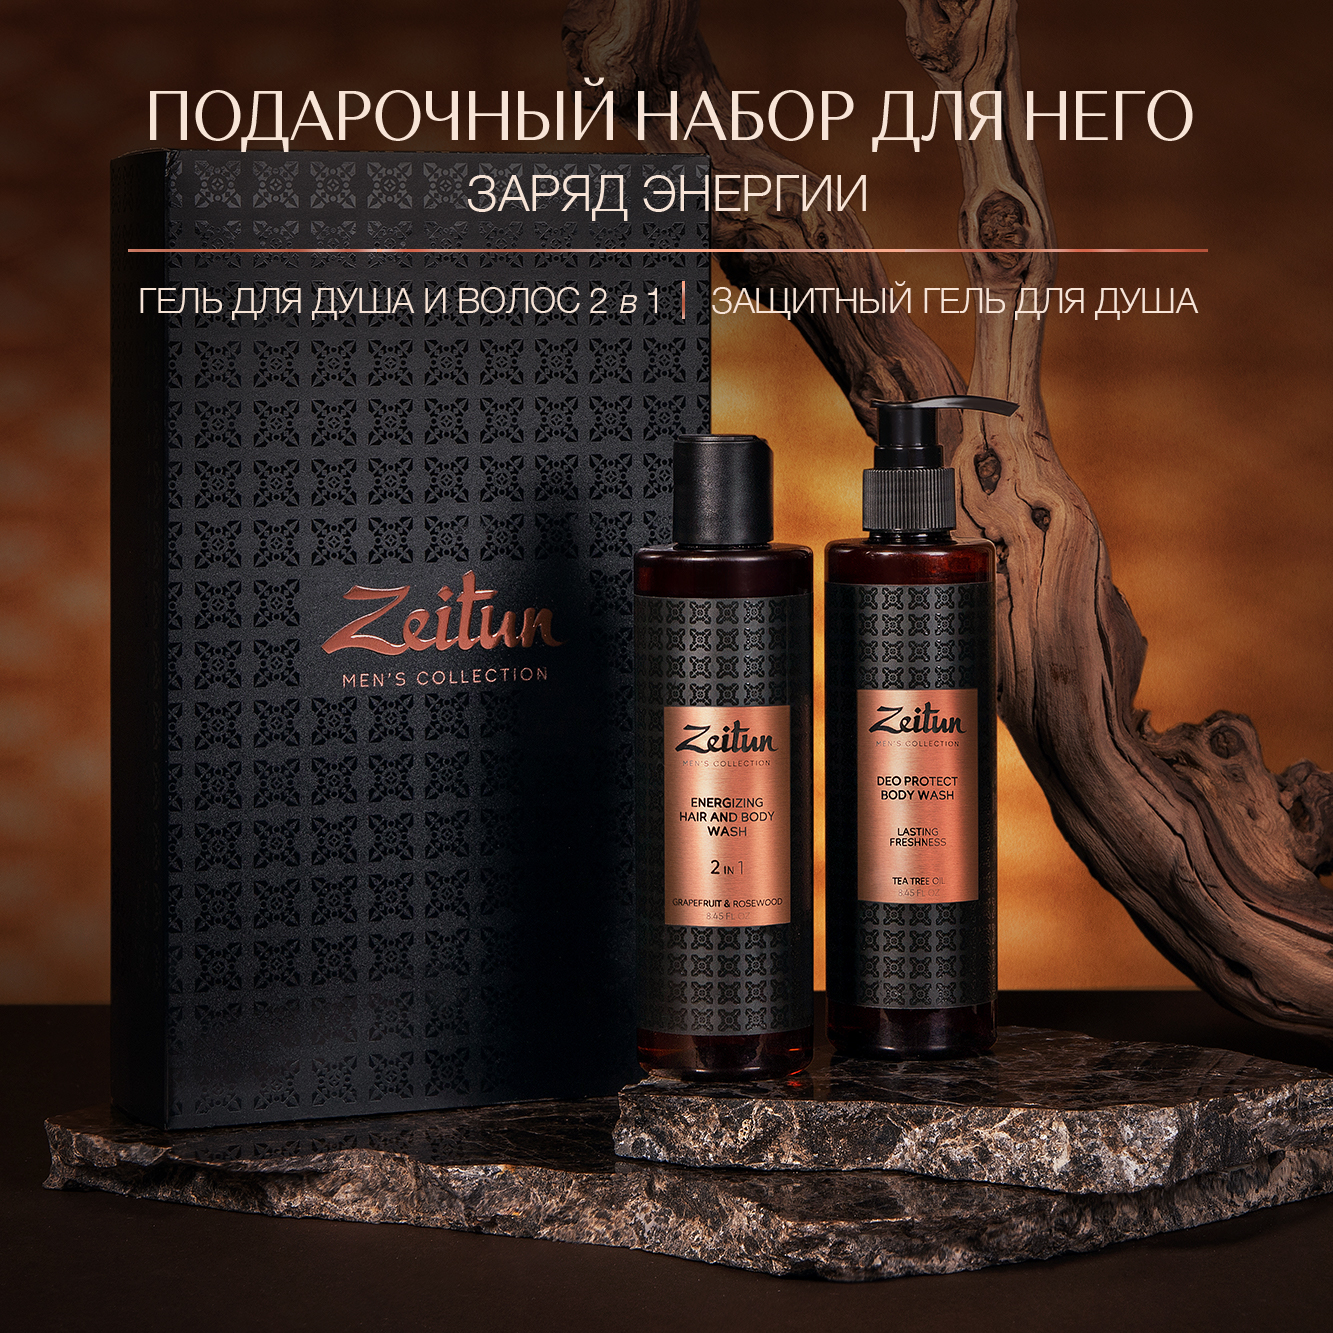 Подарочный набор для мужчин Zeitun косметический бьюти бокс для волос и тела